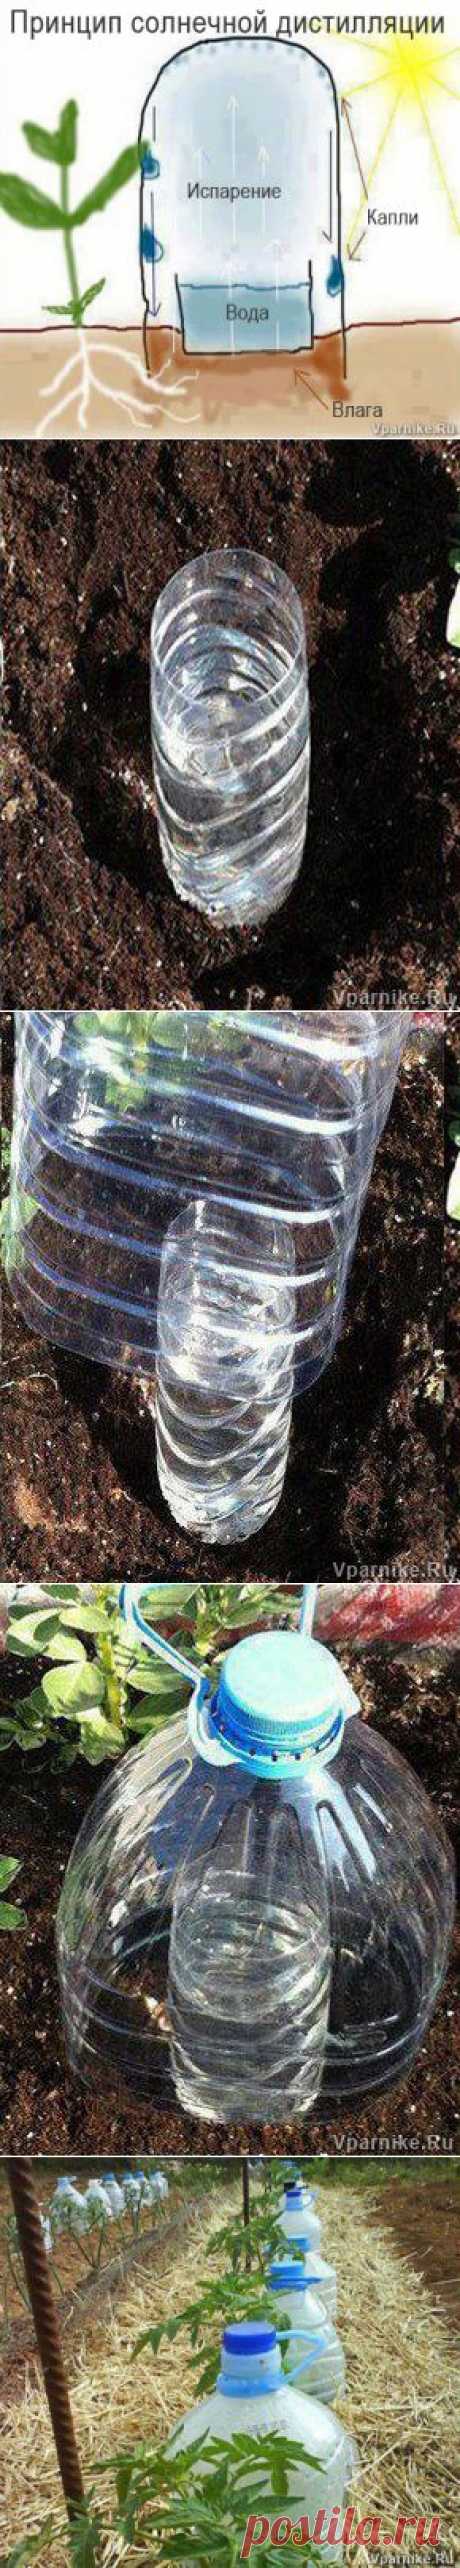 Простой способ саморегулируемого полива при помощи пластиковых бутылок | Vparnike.ru